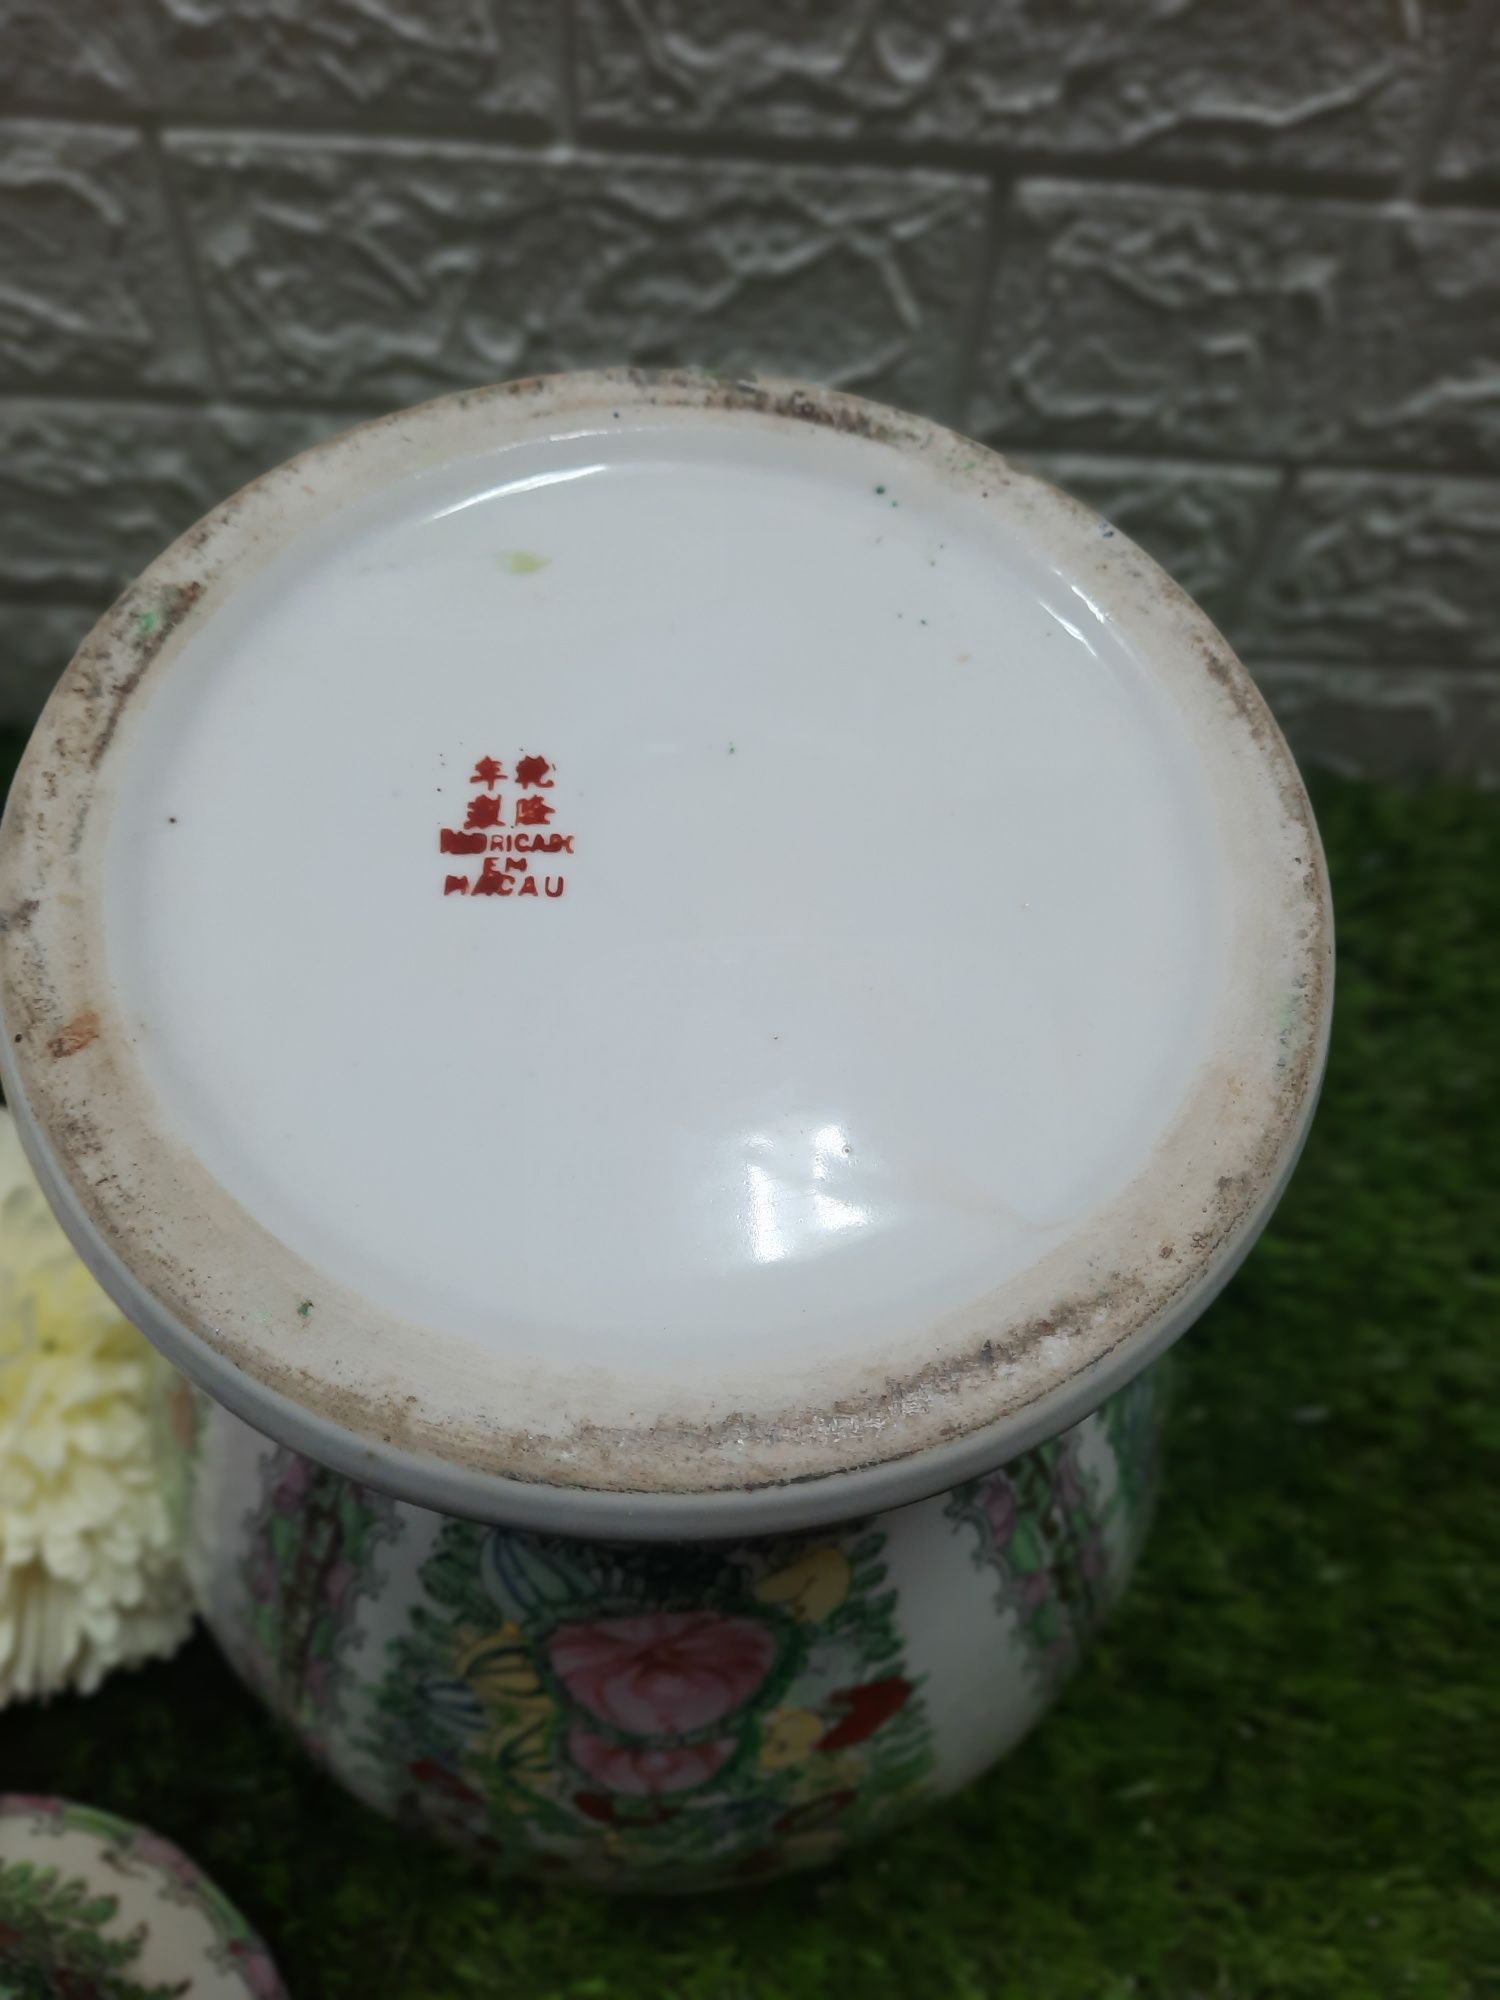 Lindíssimo pote de porcelana chinesa - Macau